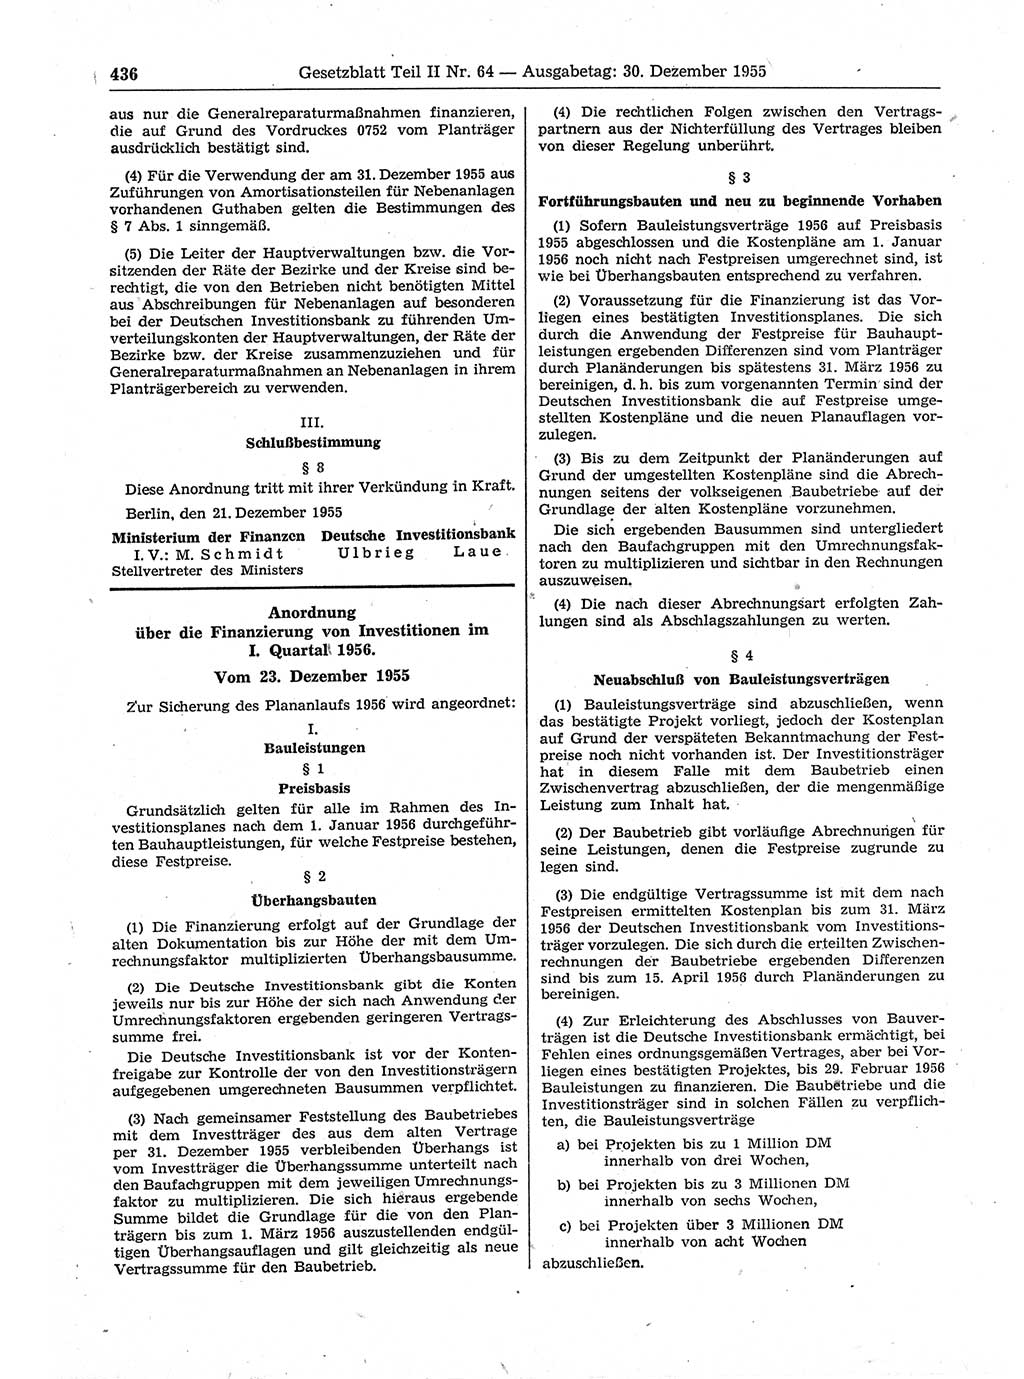 Gesetzblatt (GBl.) der Deutschen Demokratischen Republik (DDR) Teil ⅠⅠ 1955, Seite 436 (GBl. DDR ⅠⅠ 1955, S. 436)